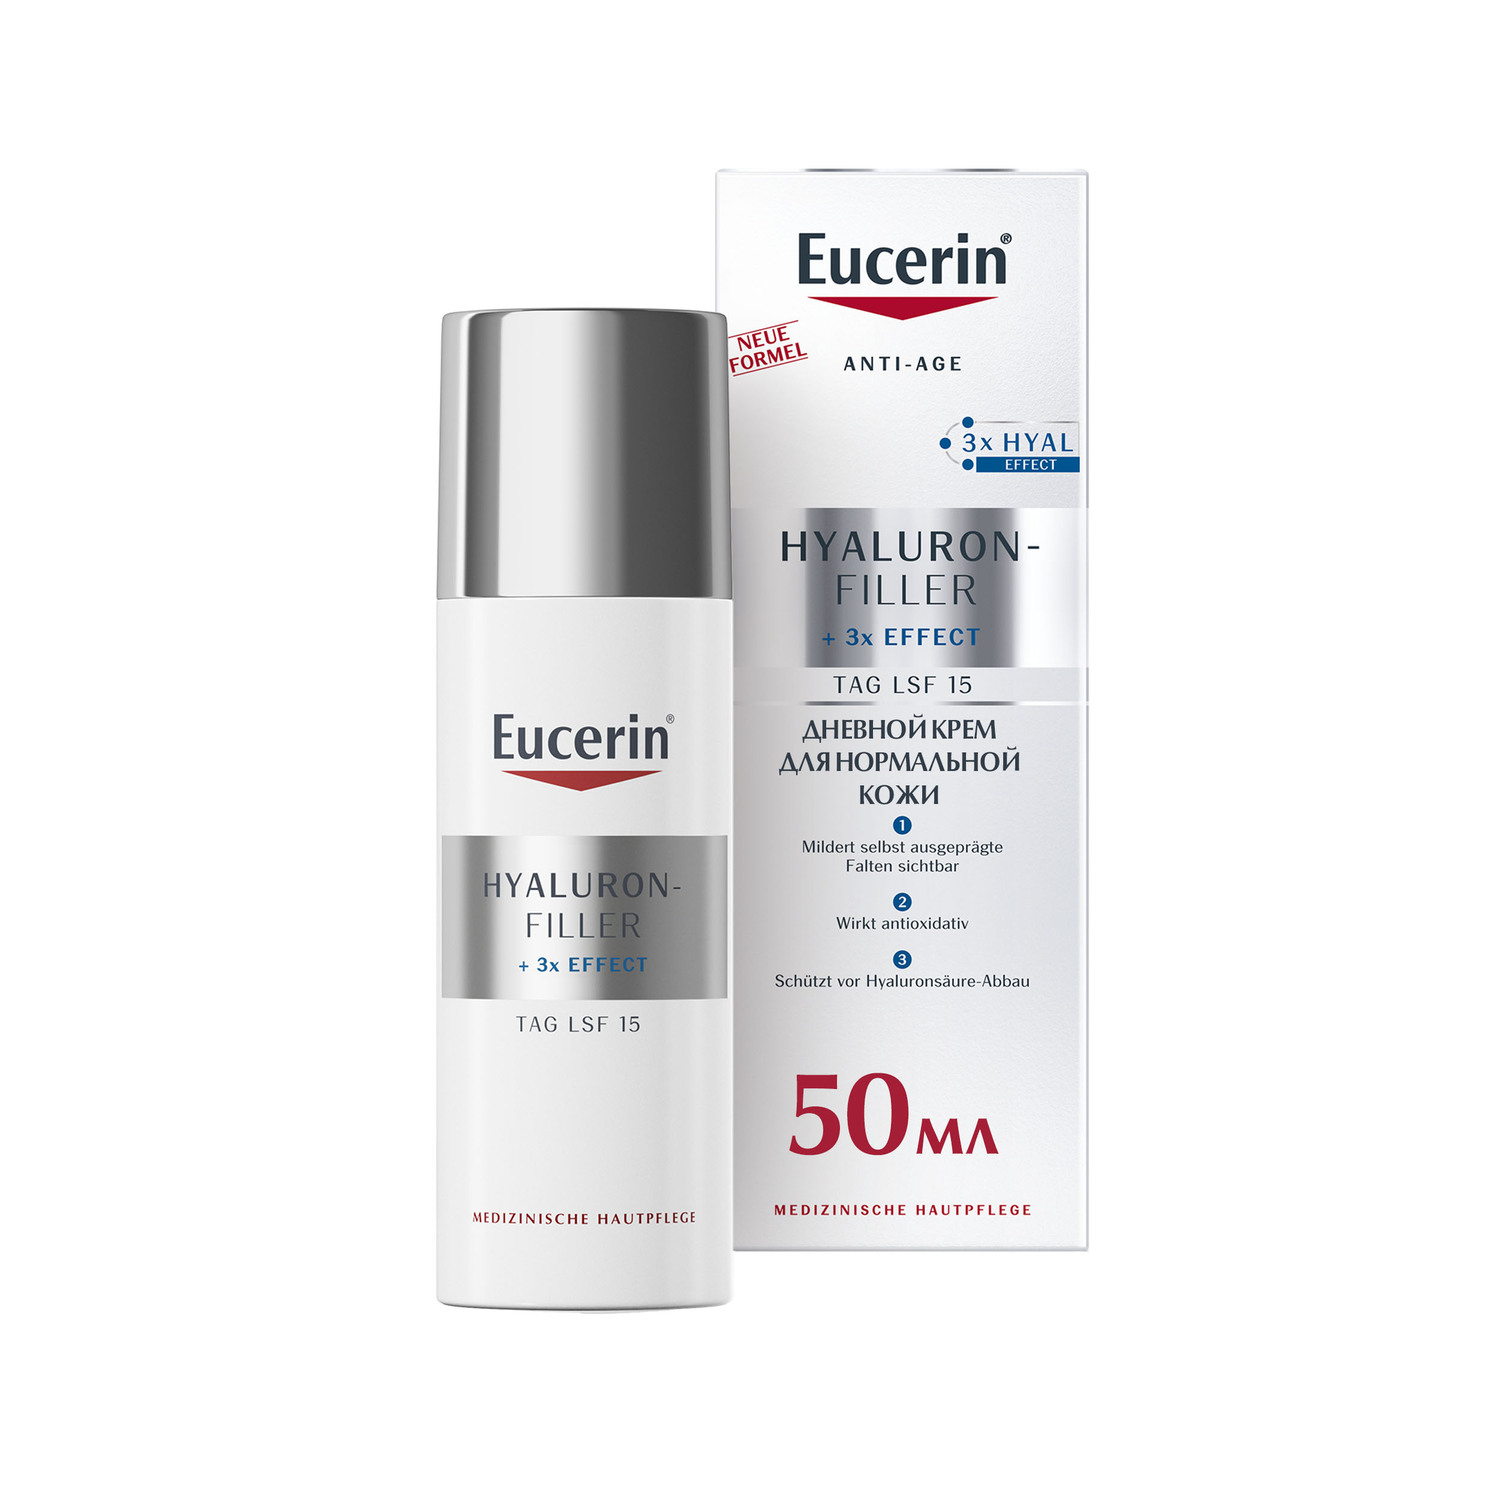 Eucerin Антивозрастной крем для ухода за нормальной и комбинированной кожей SPF 15, 50 мл (Eucerin, Hyaluron-Filler) антивозрастной крем для ухода за нормальной и комбинированной кожей spf 15 eucerin hyaluron filler 50 мл